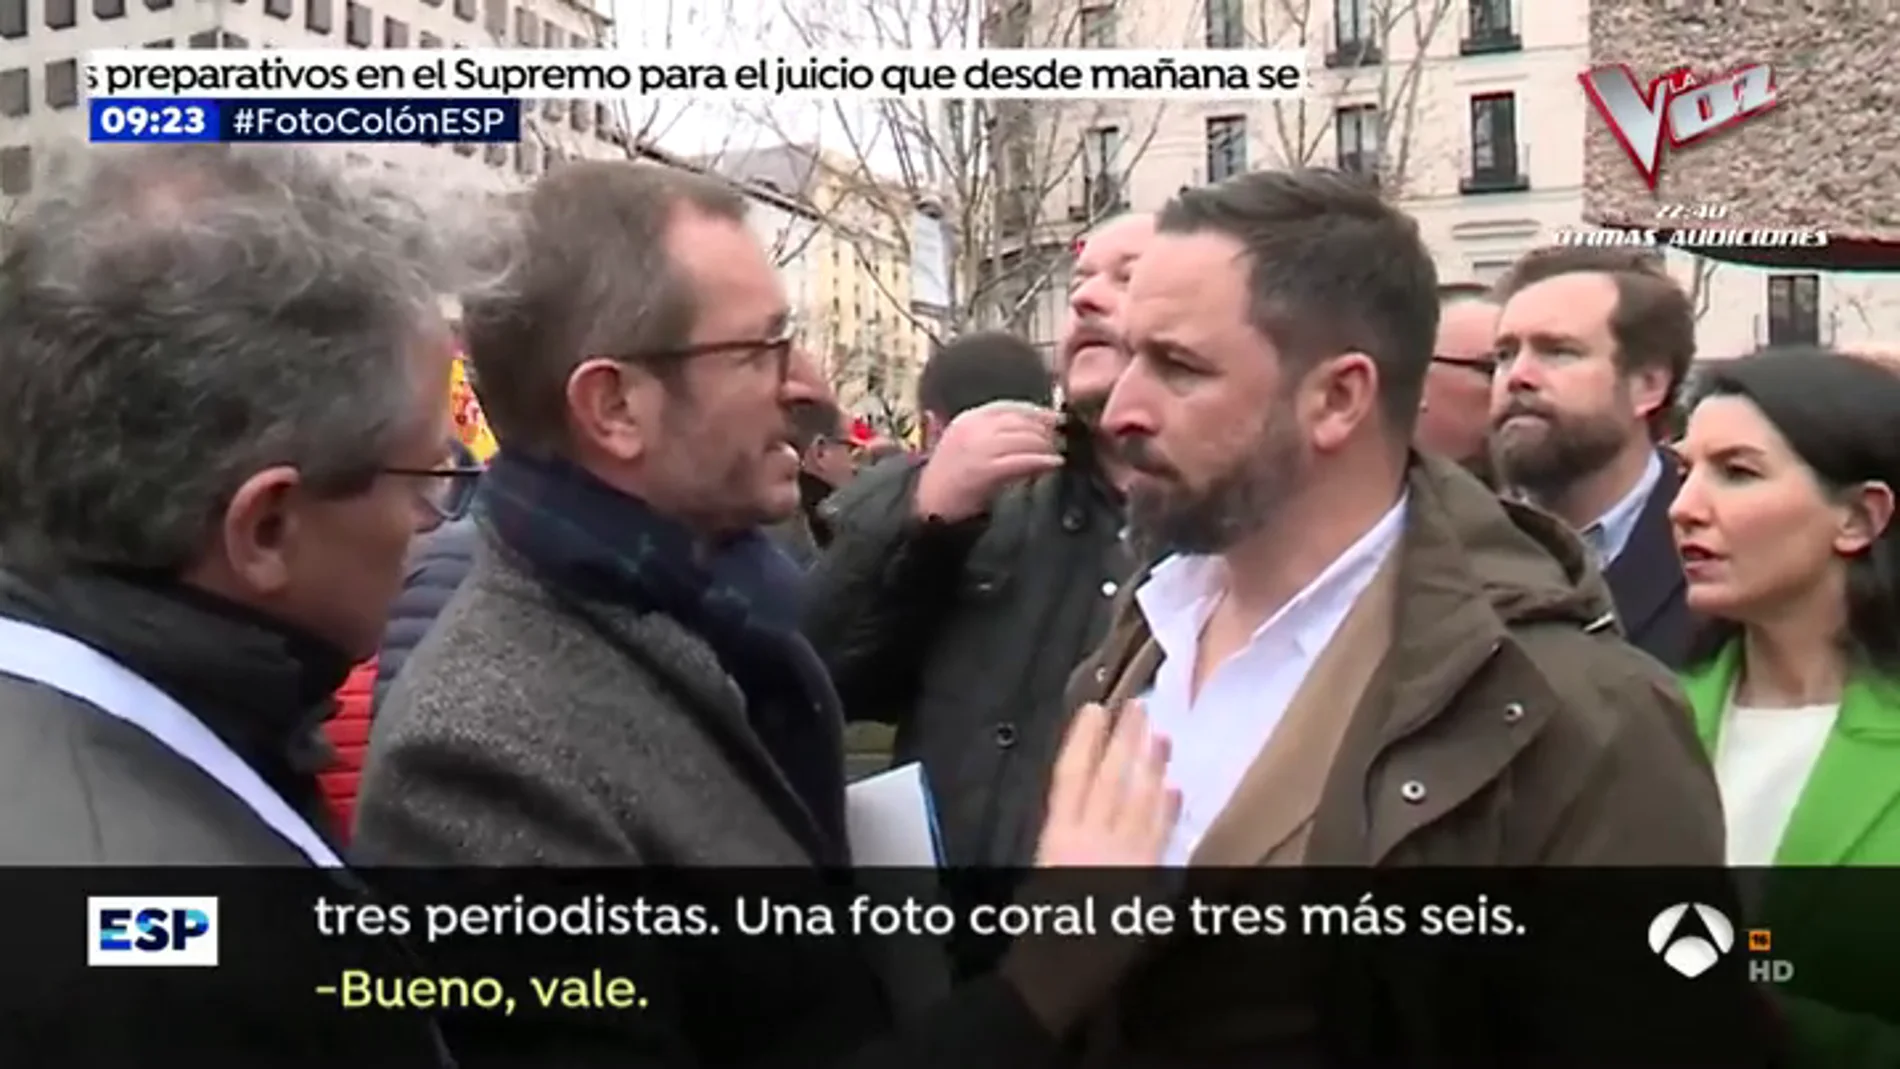 Así organizó Maroto la foto de Casado y Rivera con Santiago Abascal: "Cuando aplaudan 'Viva España' tienes que salir"